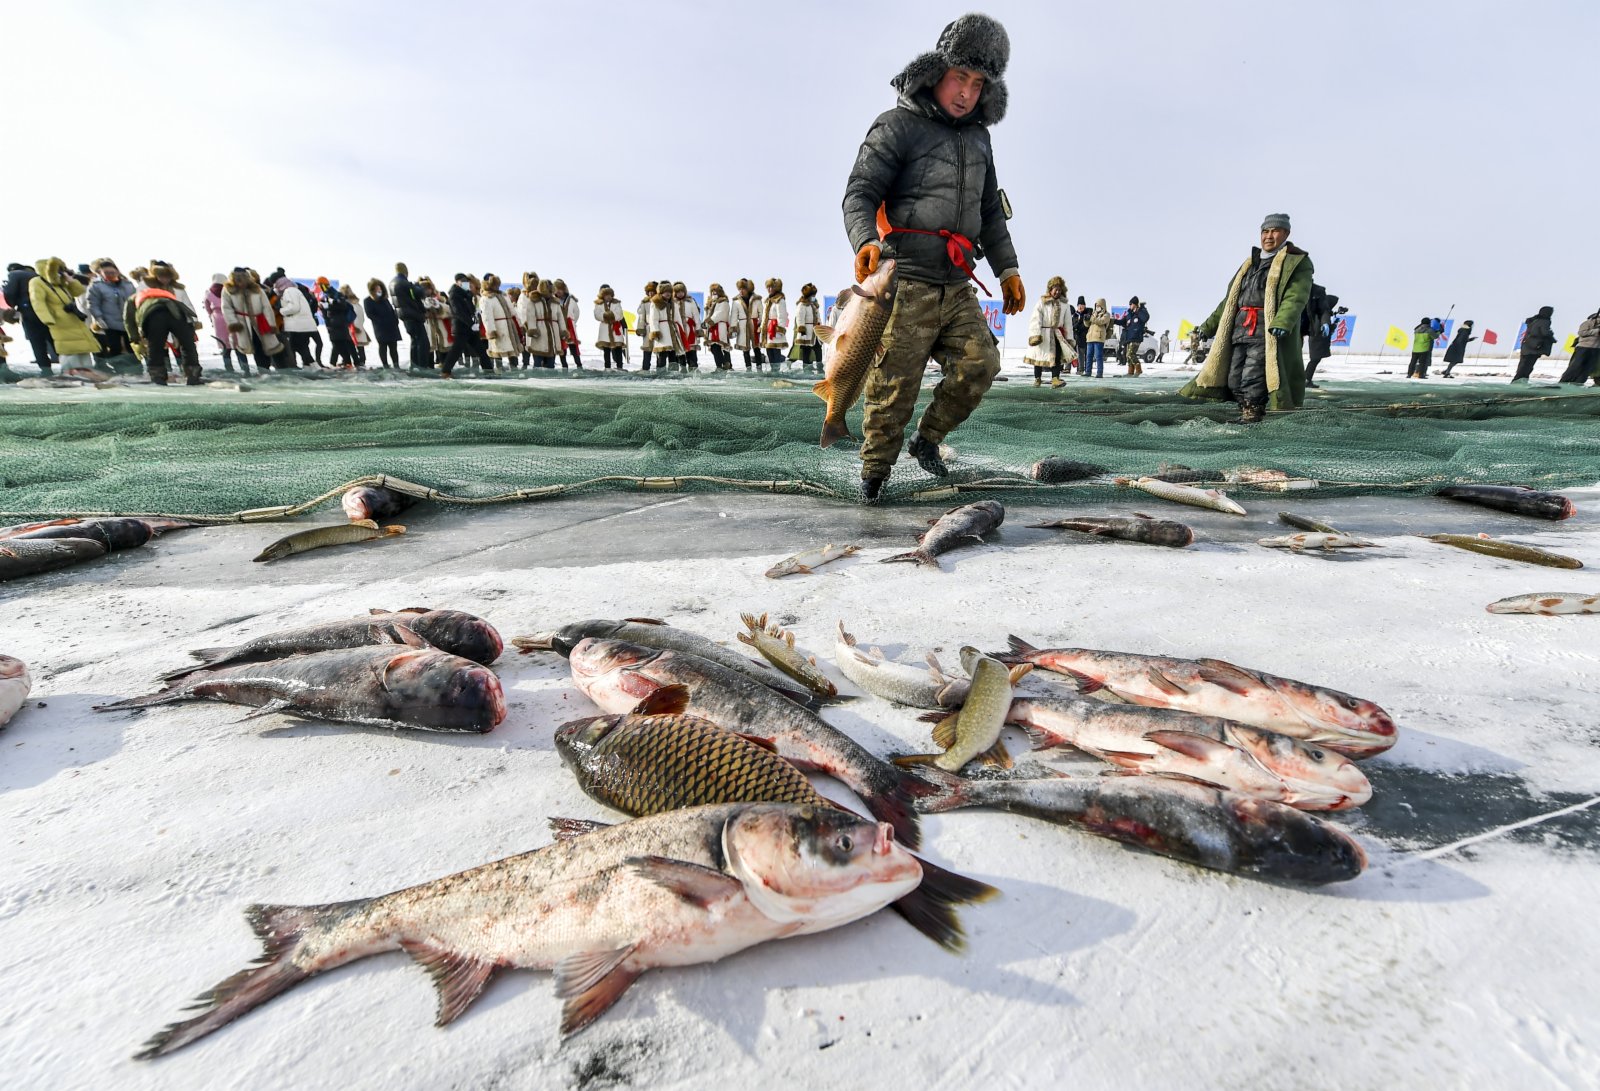 當天的冰上大拉網共捕獲各種魚類10噸左右。